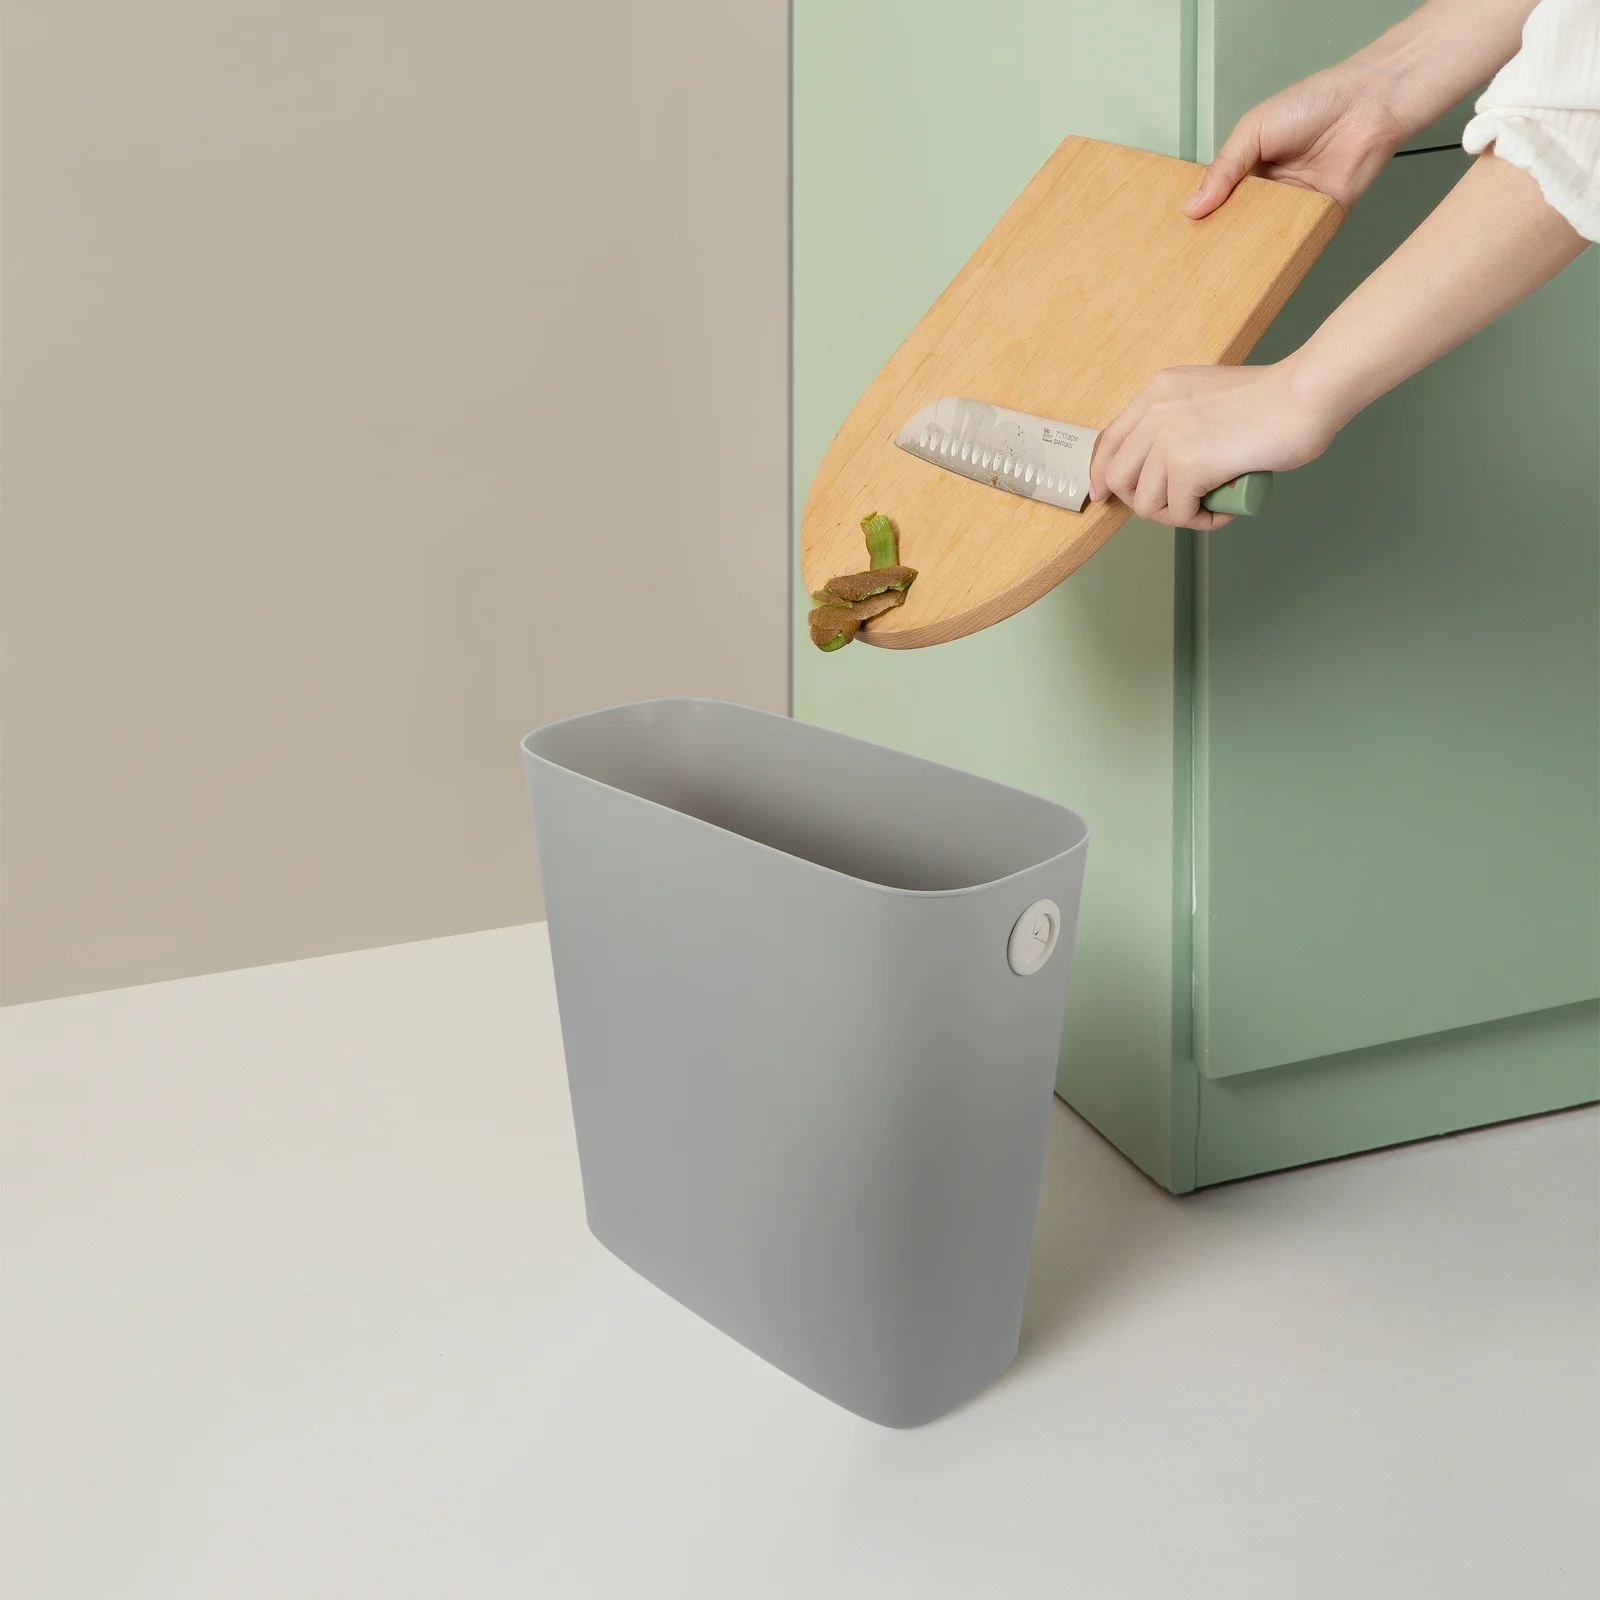 

Slim Trash Can Wastebasket No Lid Plastic Trash Bin Garbage Container Bins Trash Holder Bathroom Bedroom Home Office Dorm Room